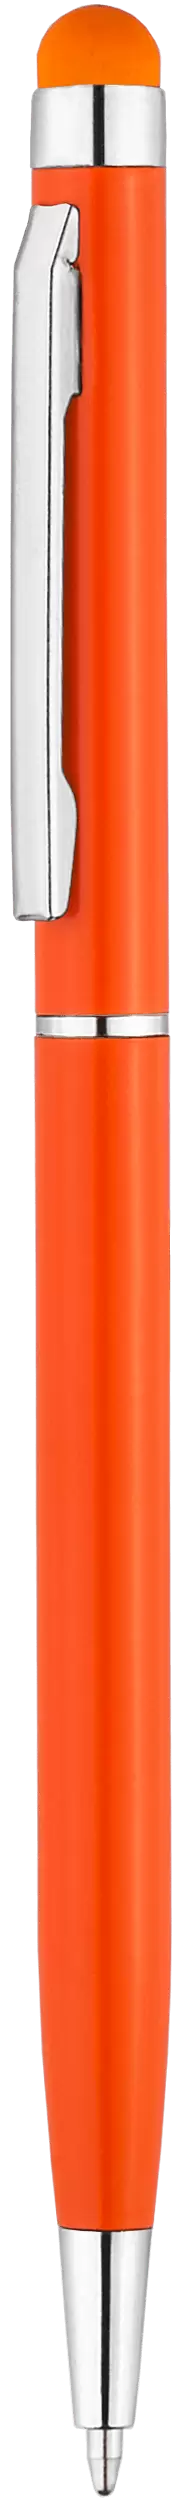 Ручка KENO Оранжевая NEW 1117-05